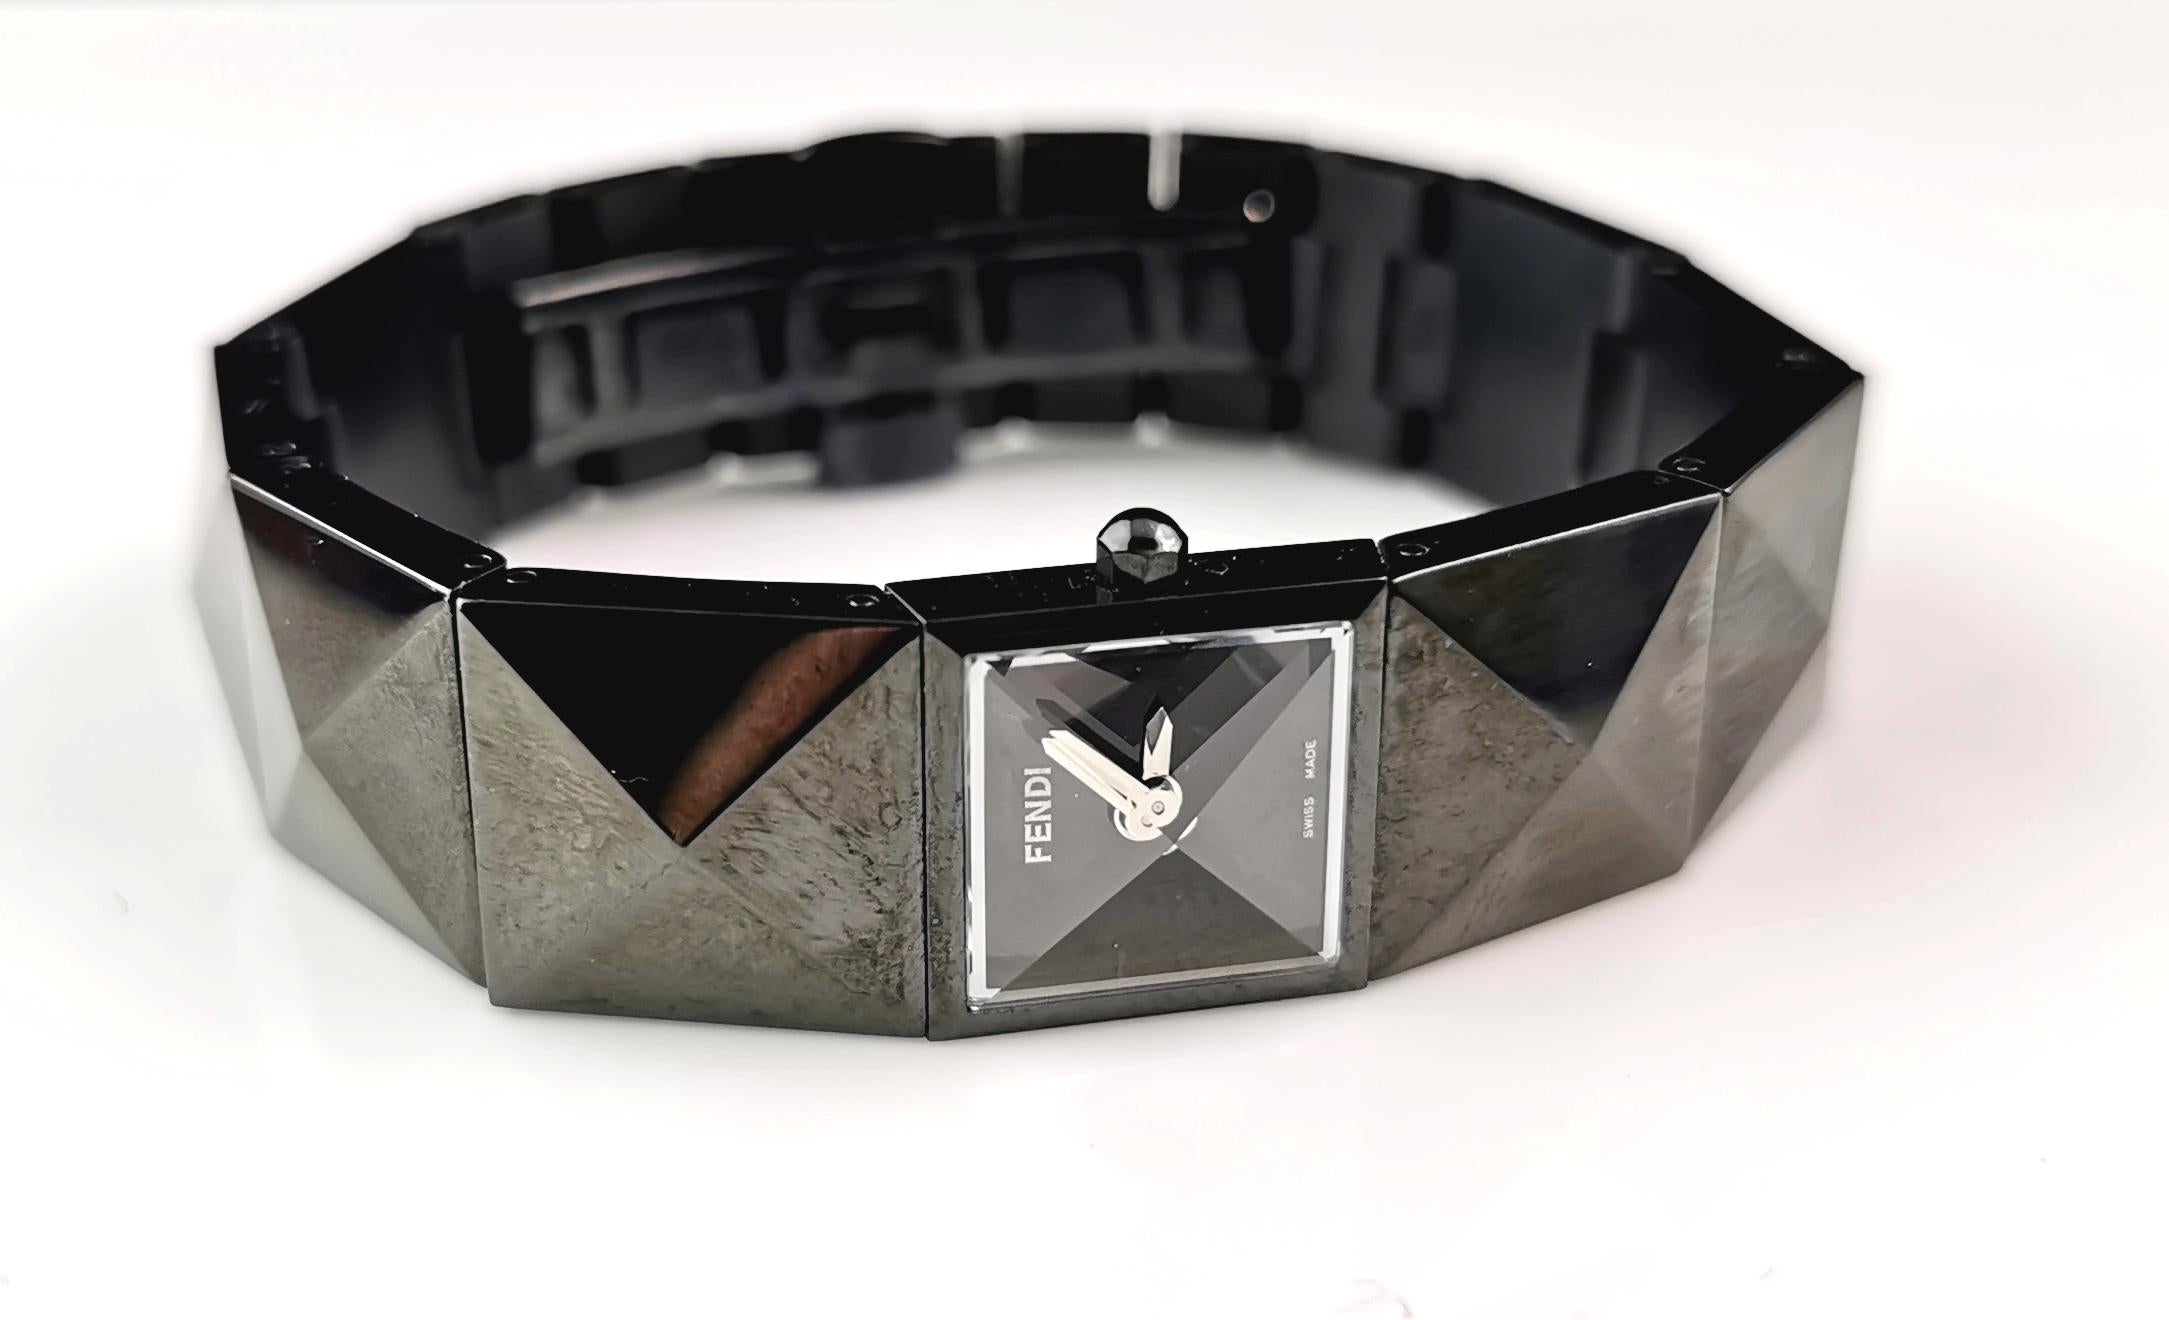 Eine stilvolle und ikonische Damenarmbanduhr Fendi 4270 l.

Es handelt sich um eine schwarze, ionenplattierte Stahlarmbanduhr mit einem einzigartigen Pyramidendesign, das diese Uhr zu etwas ganz Besonderem macht.

Sie hat ein kleines,